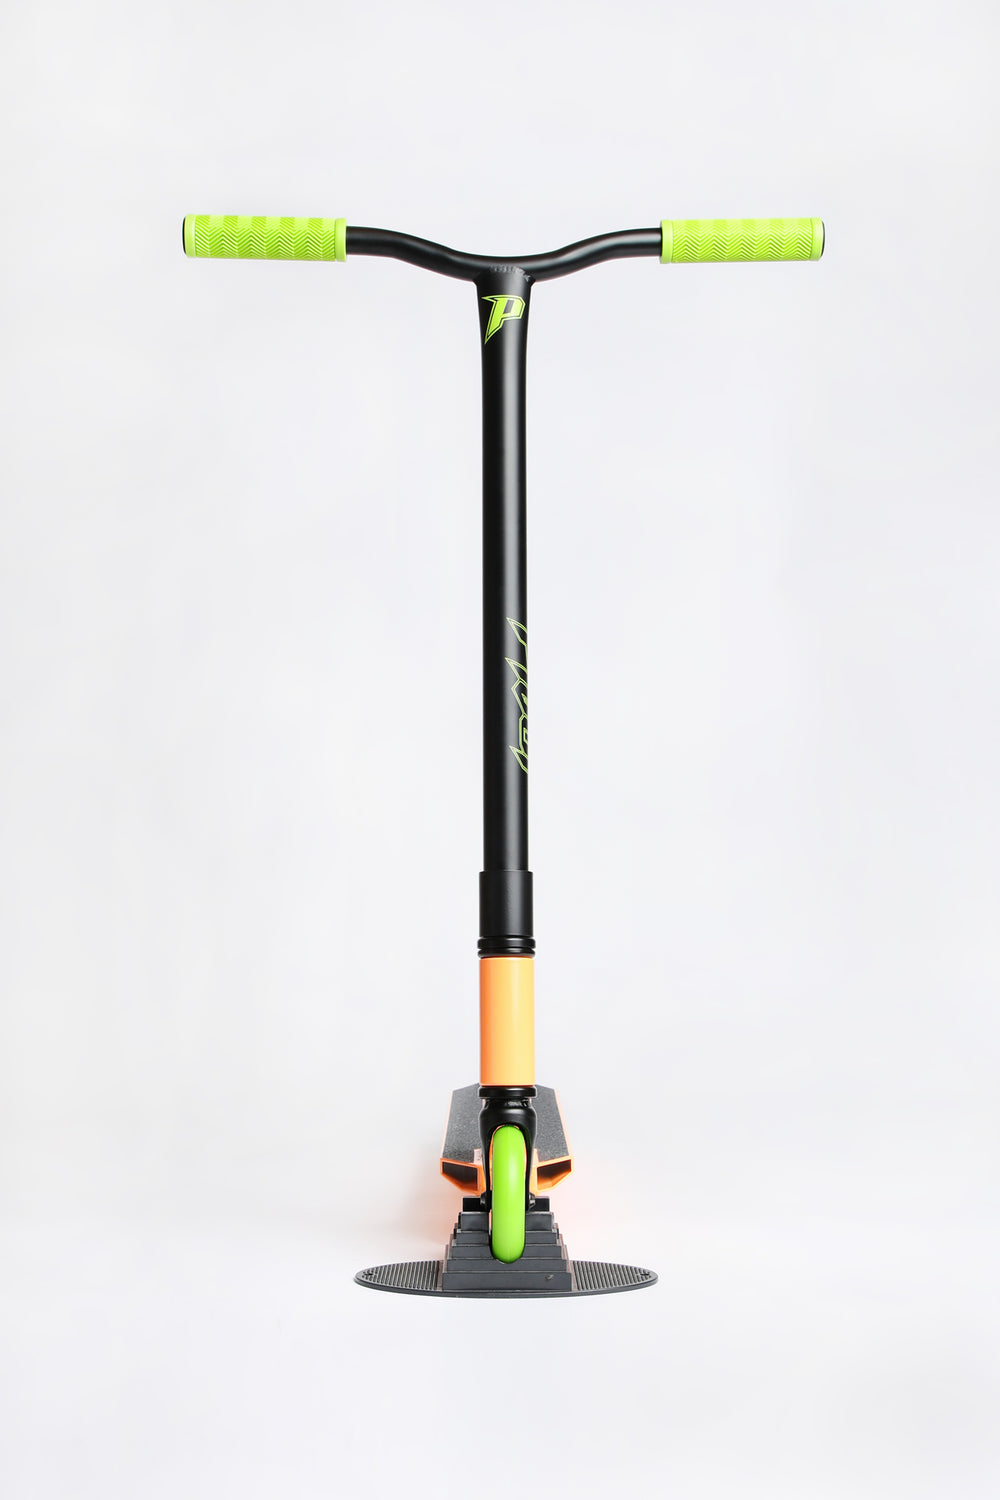 Pivot X-Ride Orange and Green Scooter Pivot X-Ride Orange and Green Scooter